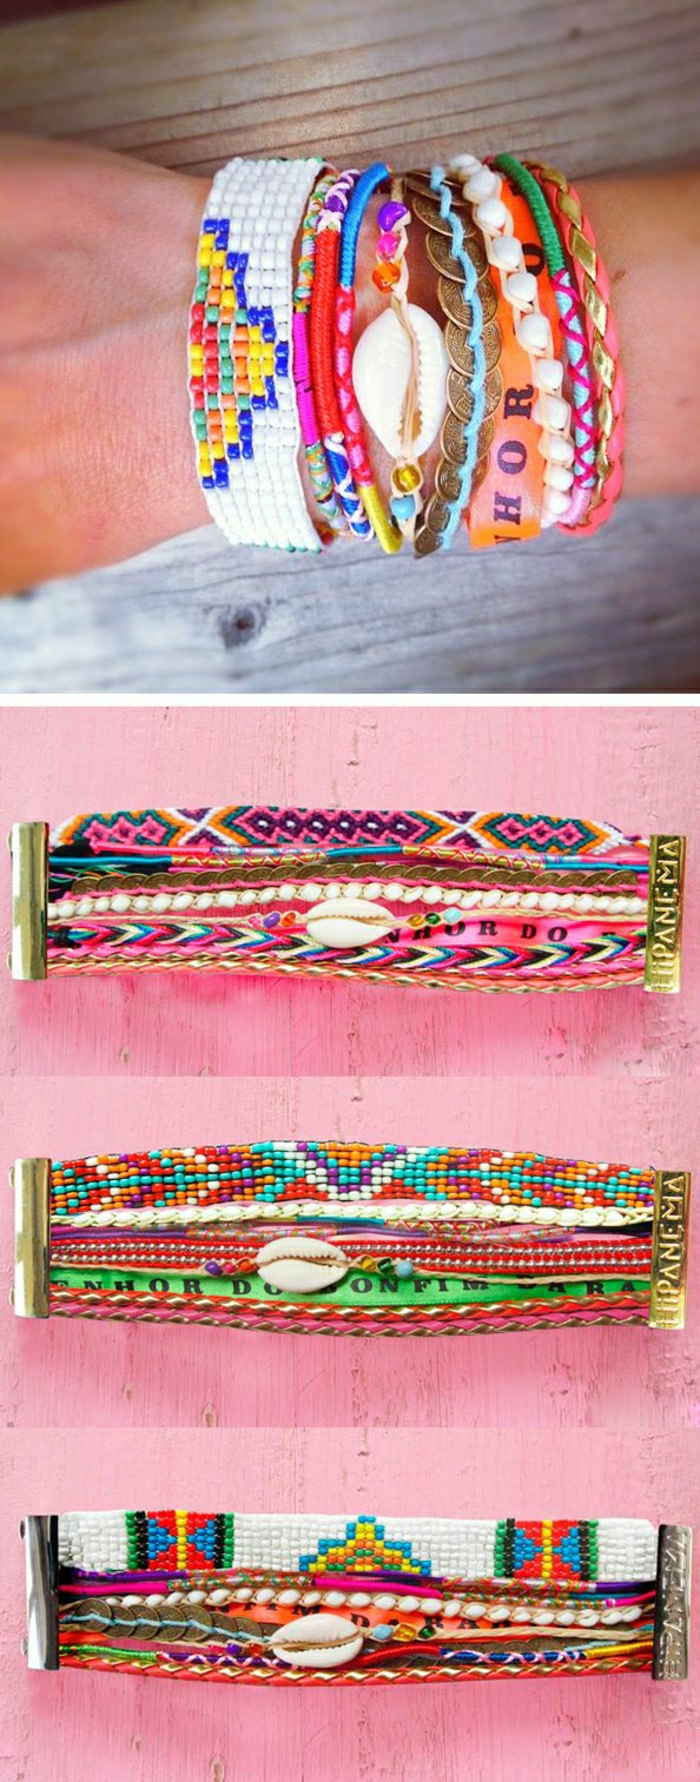 2-comment-faire-des-bracelets-brésiliens-idée-pour-bracelets-brésiliens-colorées-technique